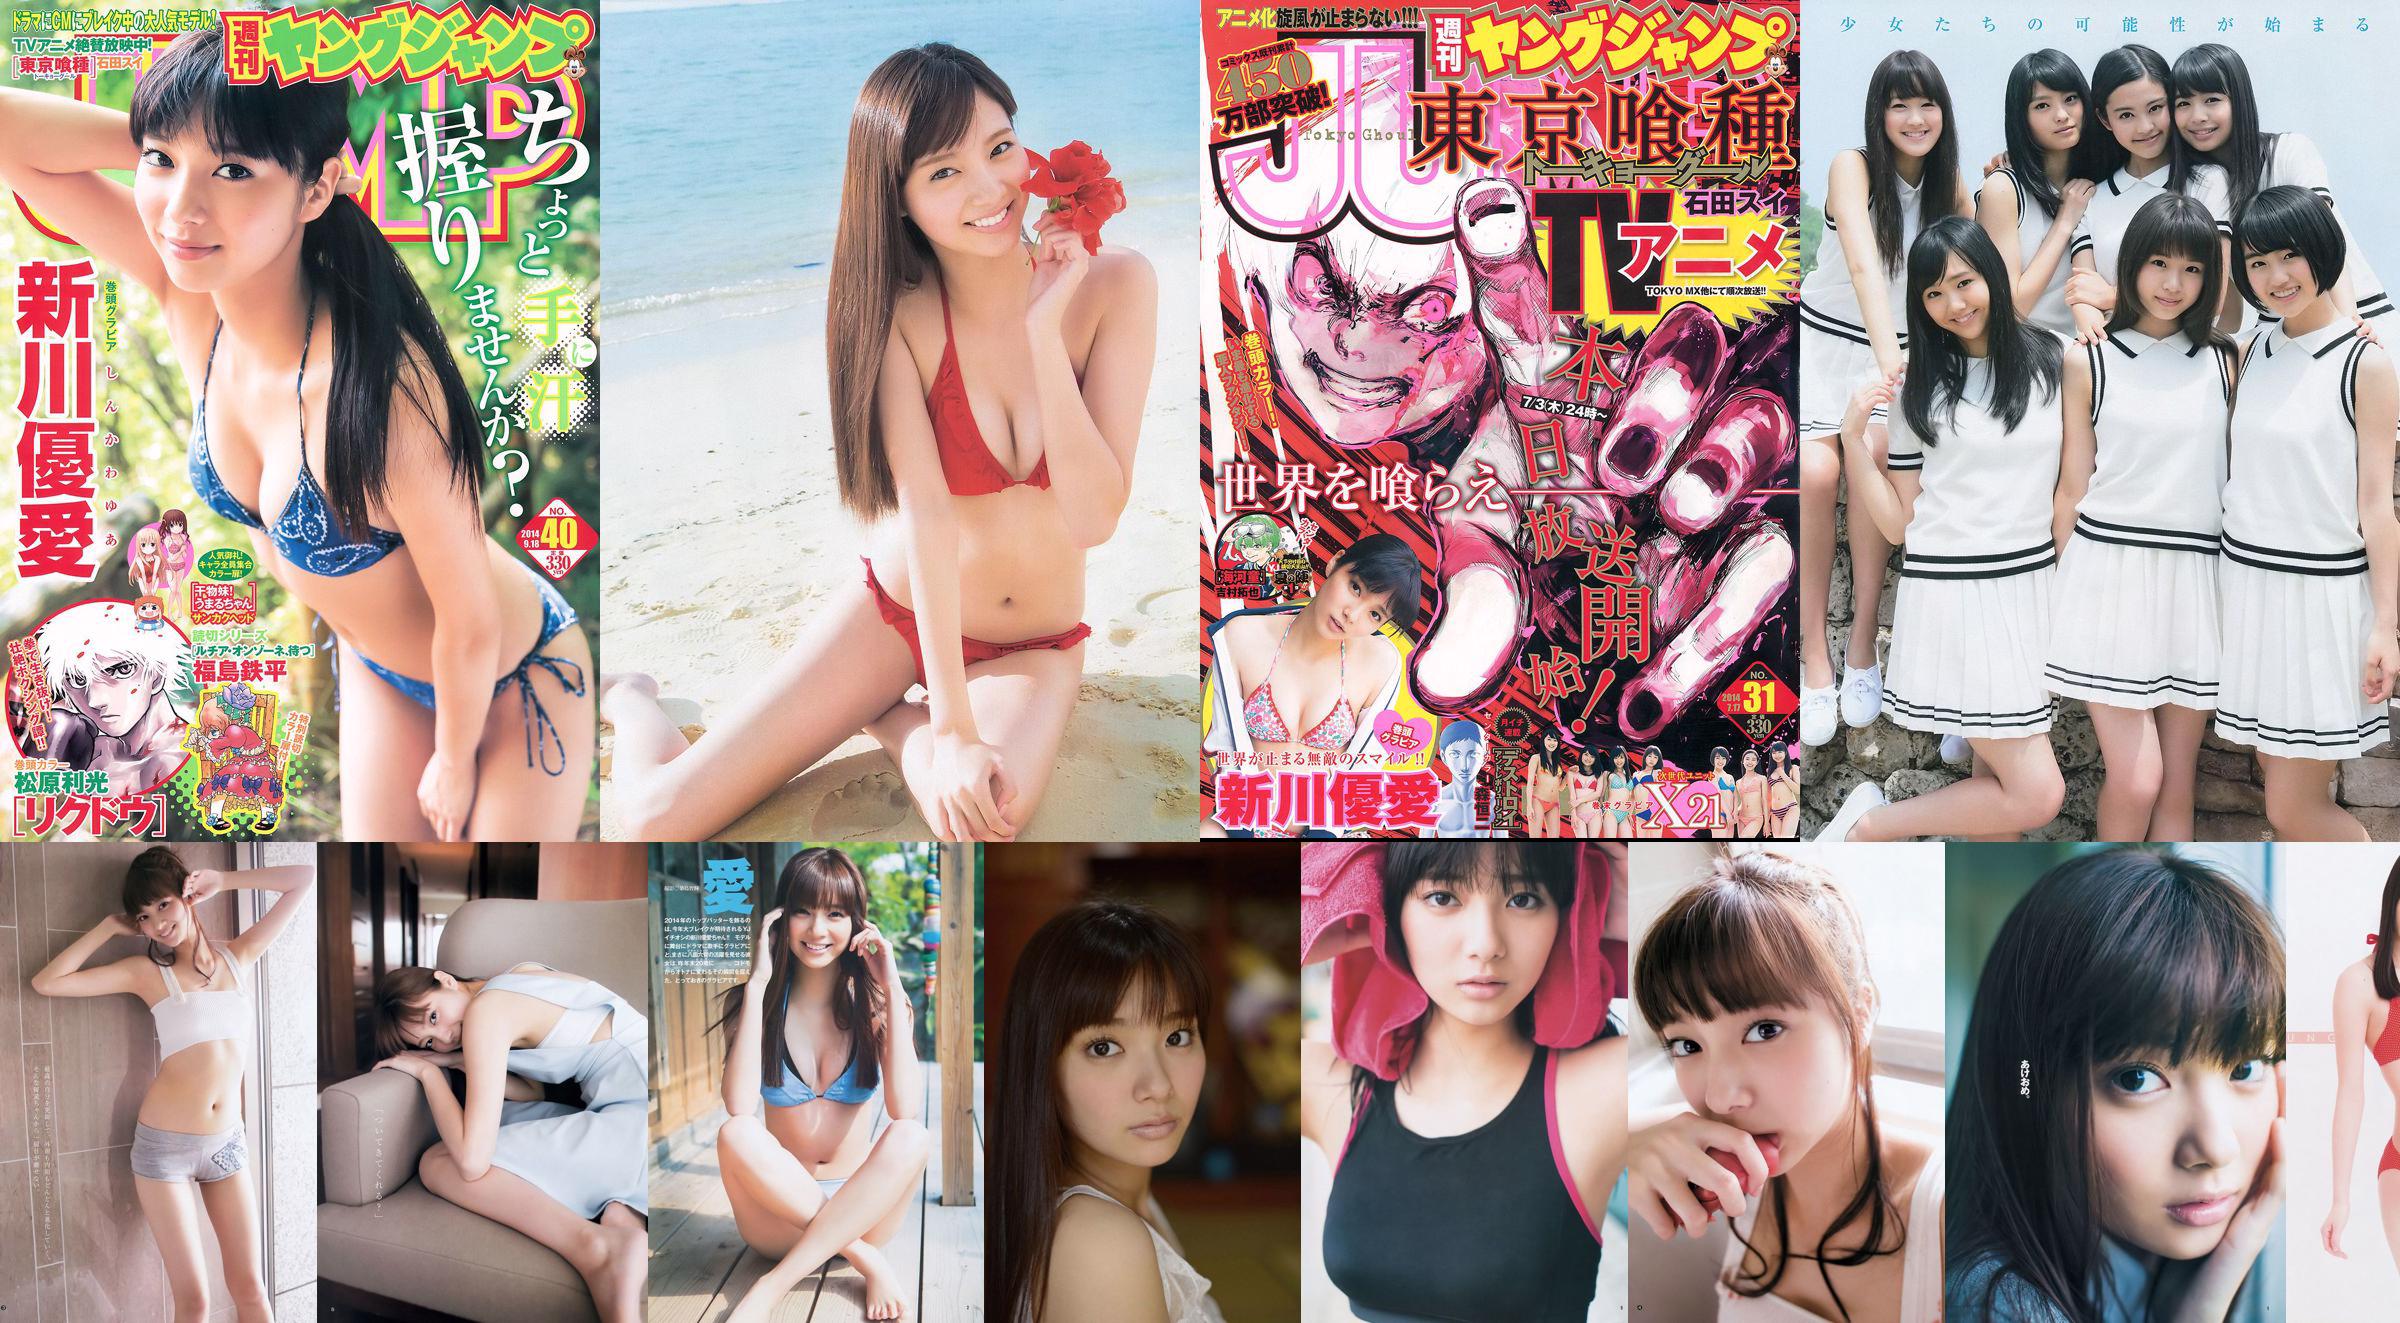 Yua Shinkawa 48 Group Hinako Kinoshita [Weekly Young Jump] 2014 No.06-07 照片 No.0be850 第5頁